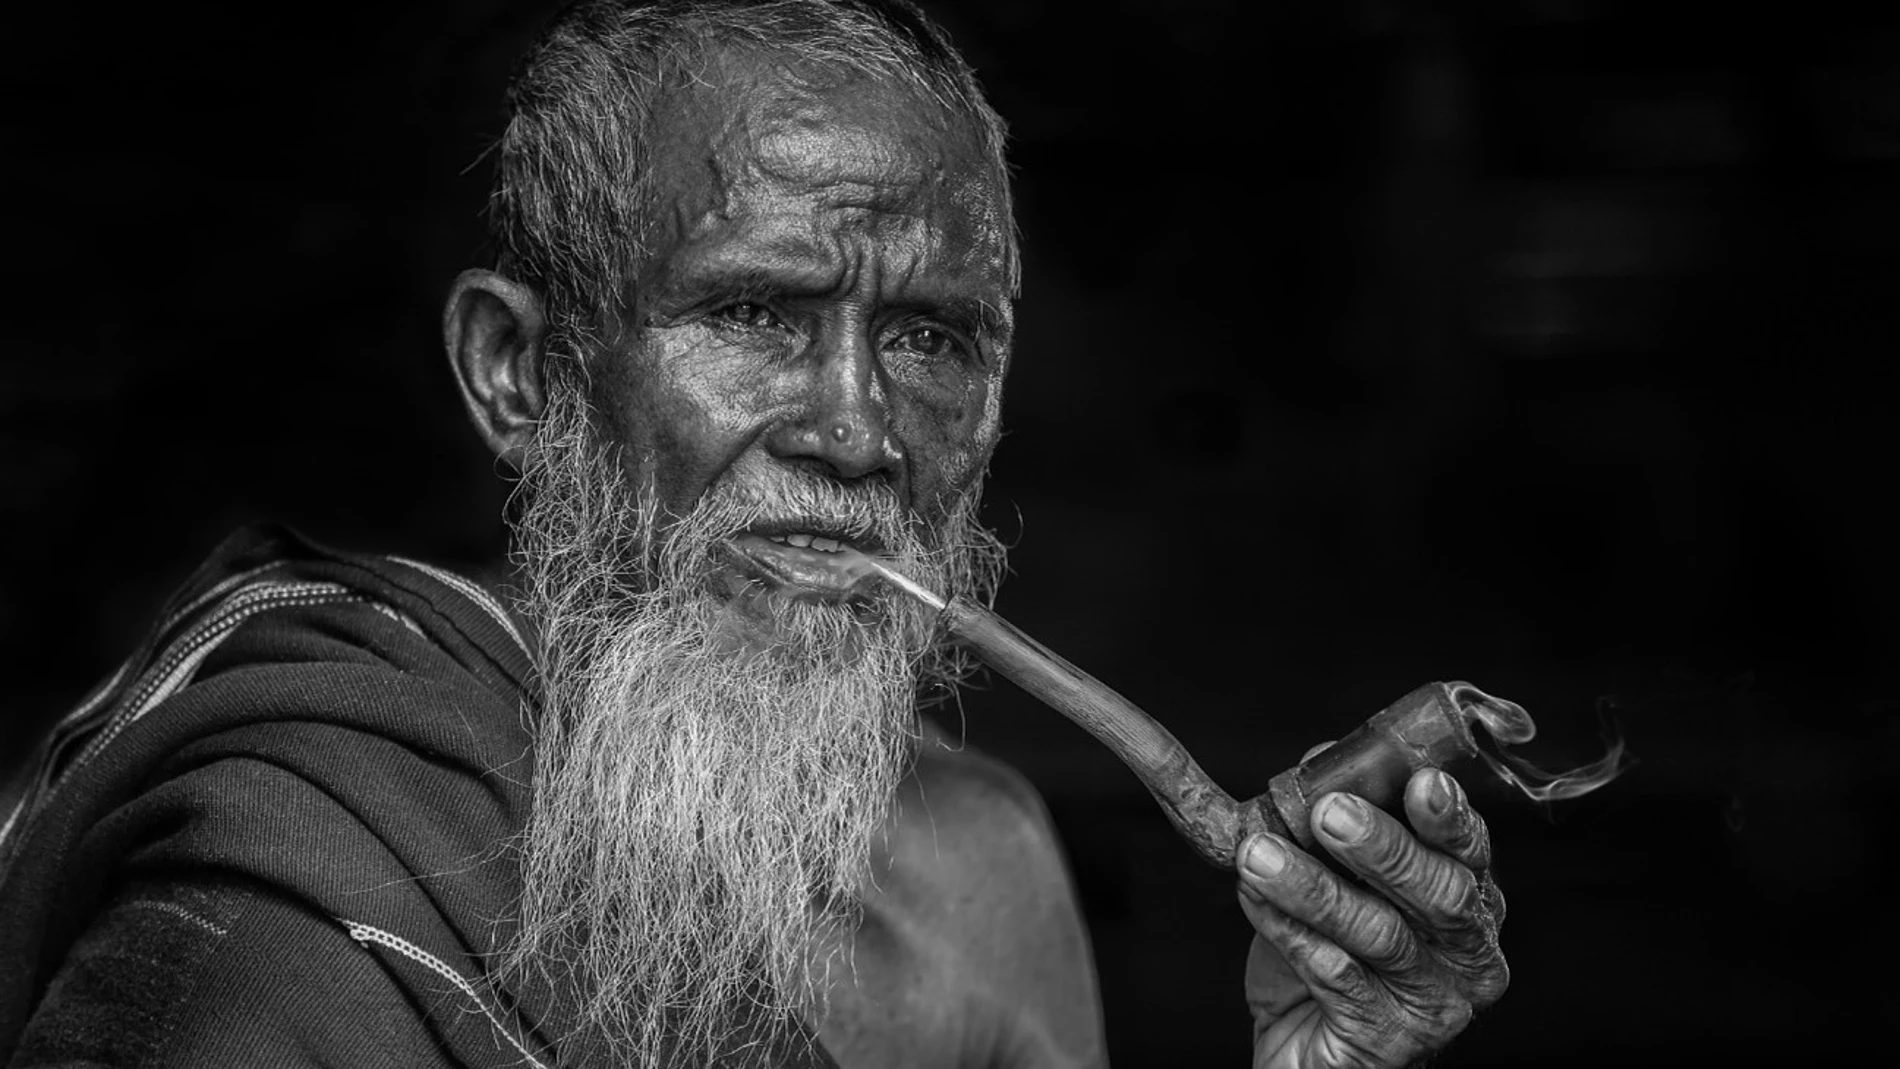 Fotografía de un anciano fumando en pipa del stock de Pixabay